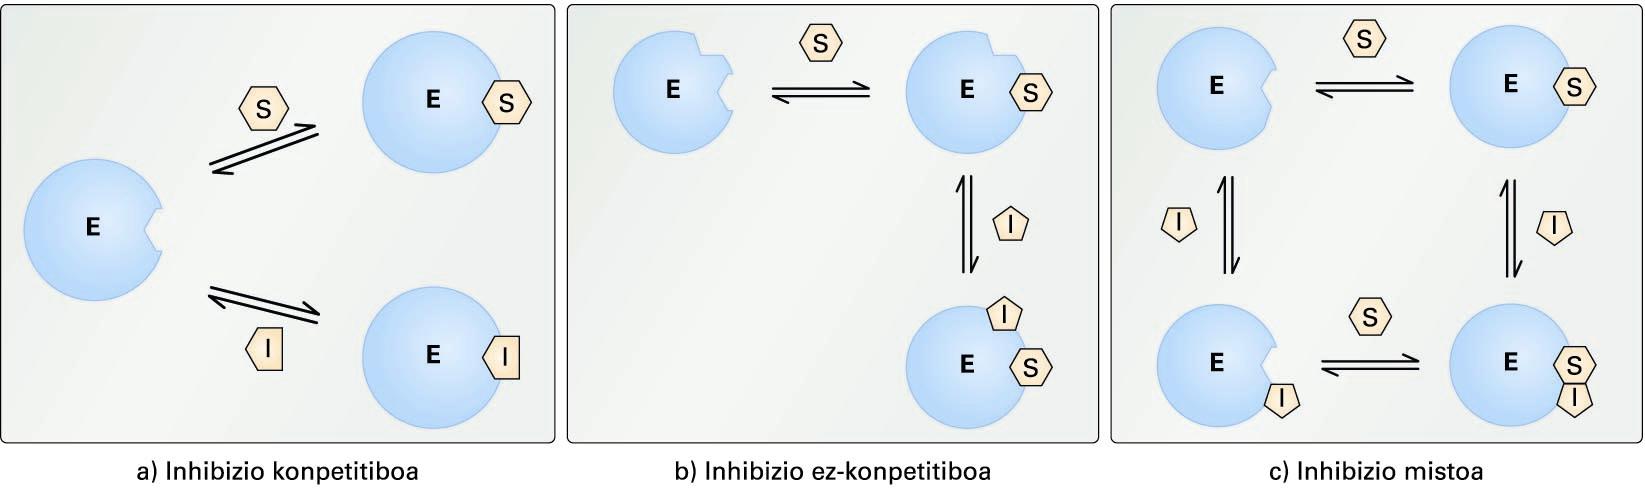 Inhibizio itzulgarrien ereduak. (a) inhibizio konpetitiboa,(b) inhibizio ez-konpetitiboa eta (c) inhibizio mistoa. E zirkulu urdinakentzima irudikatzen du, eta S-k eta I-k, substratua eta inhibitzailea, hurrenezhurren